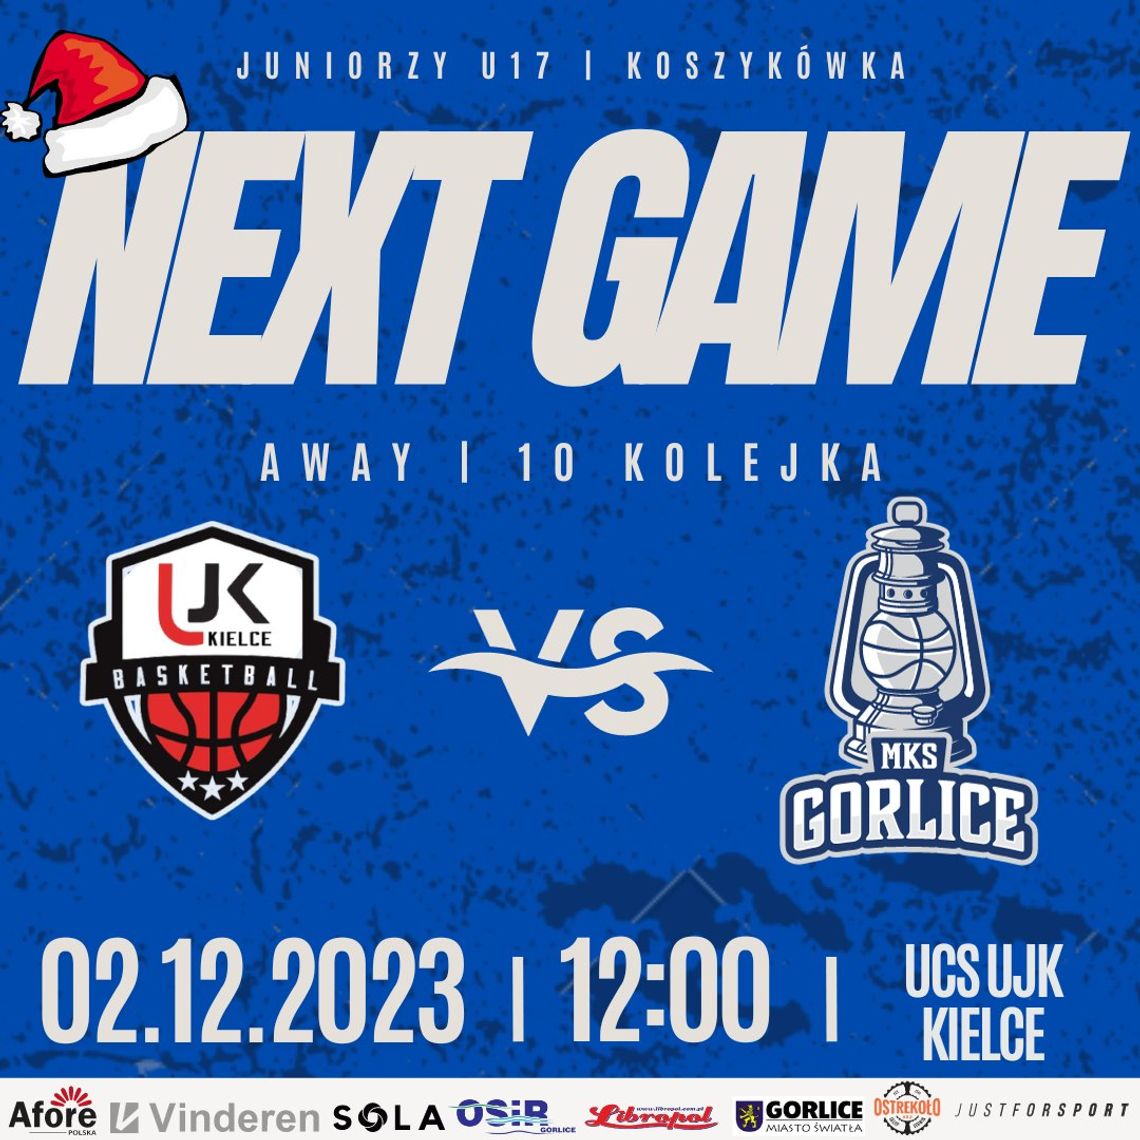 Koszykówka juniorzy U-17:  UJK Kielce – MKS Gorlice | halogorlice.info